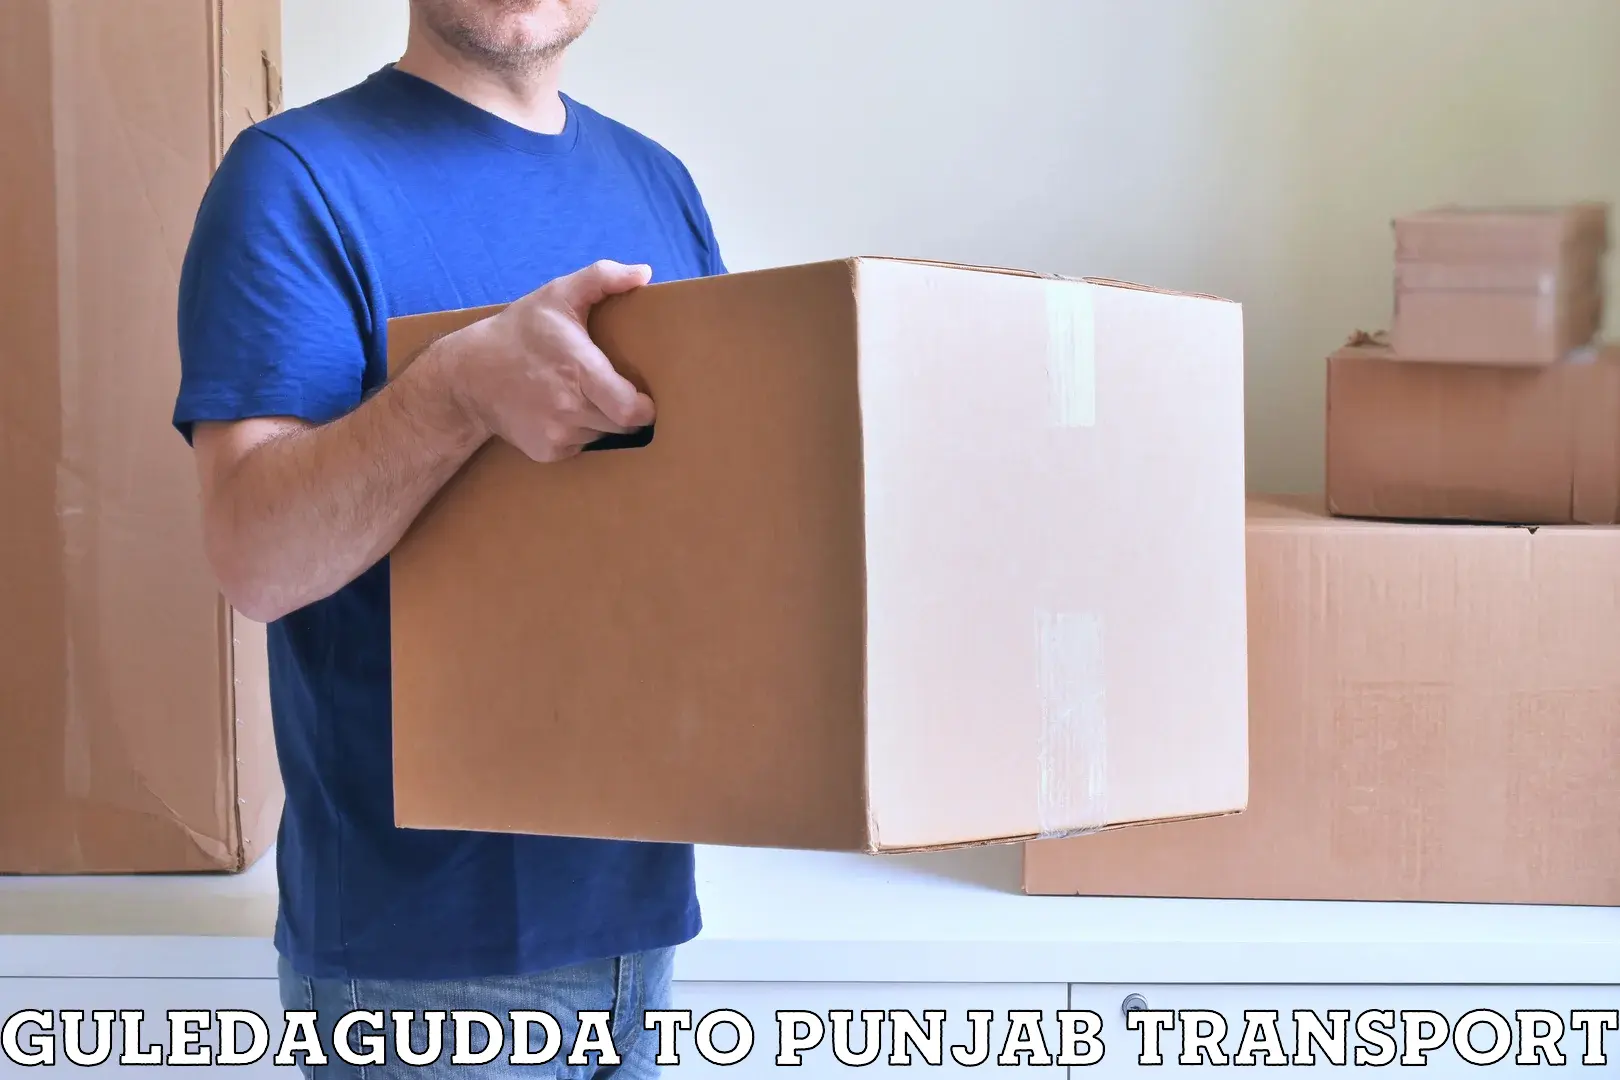 Furniture transport service Guledagudda to Sirhind Fatehgarh